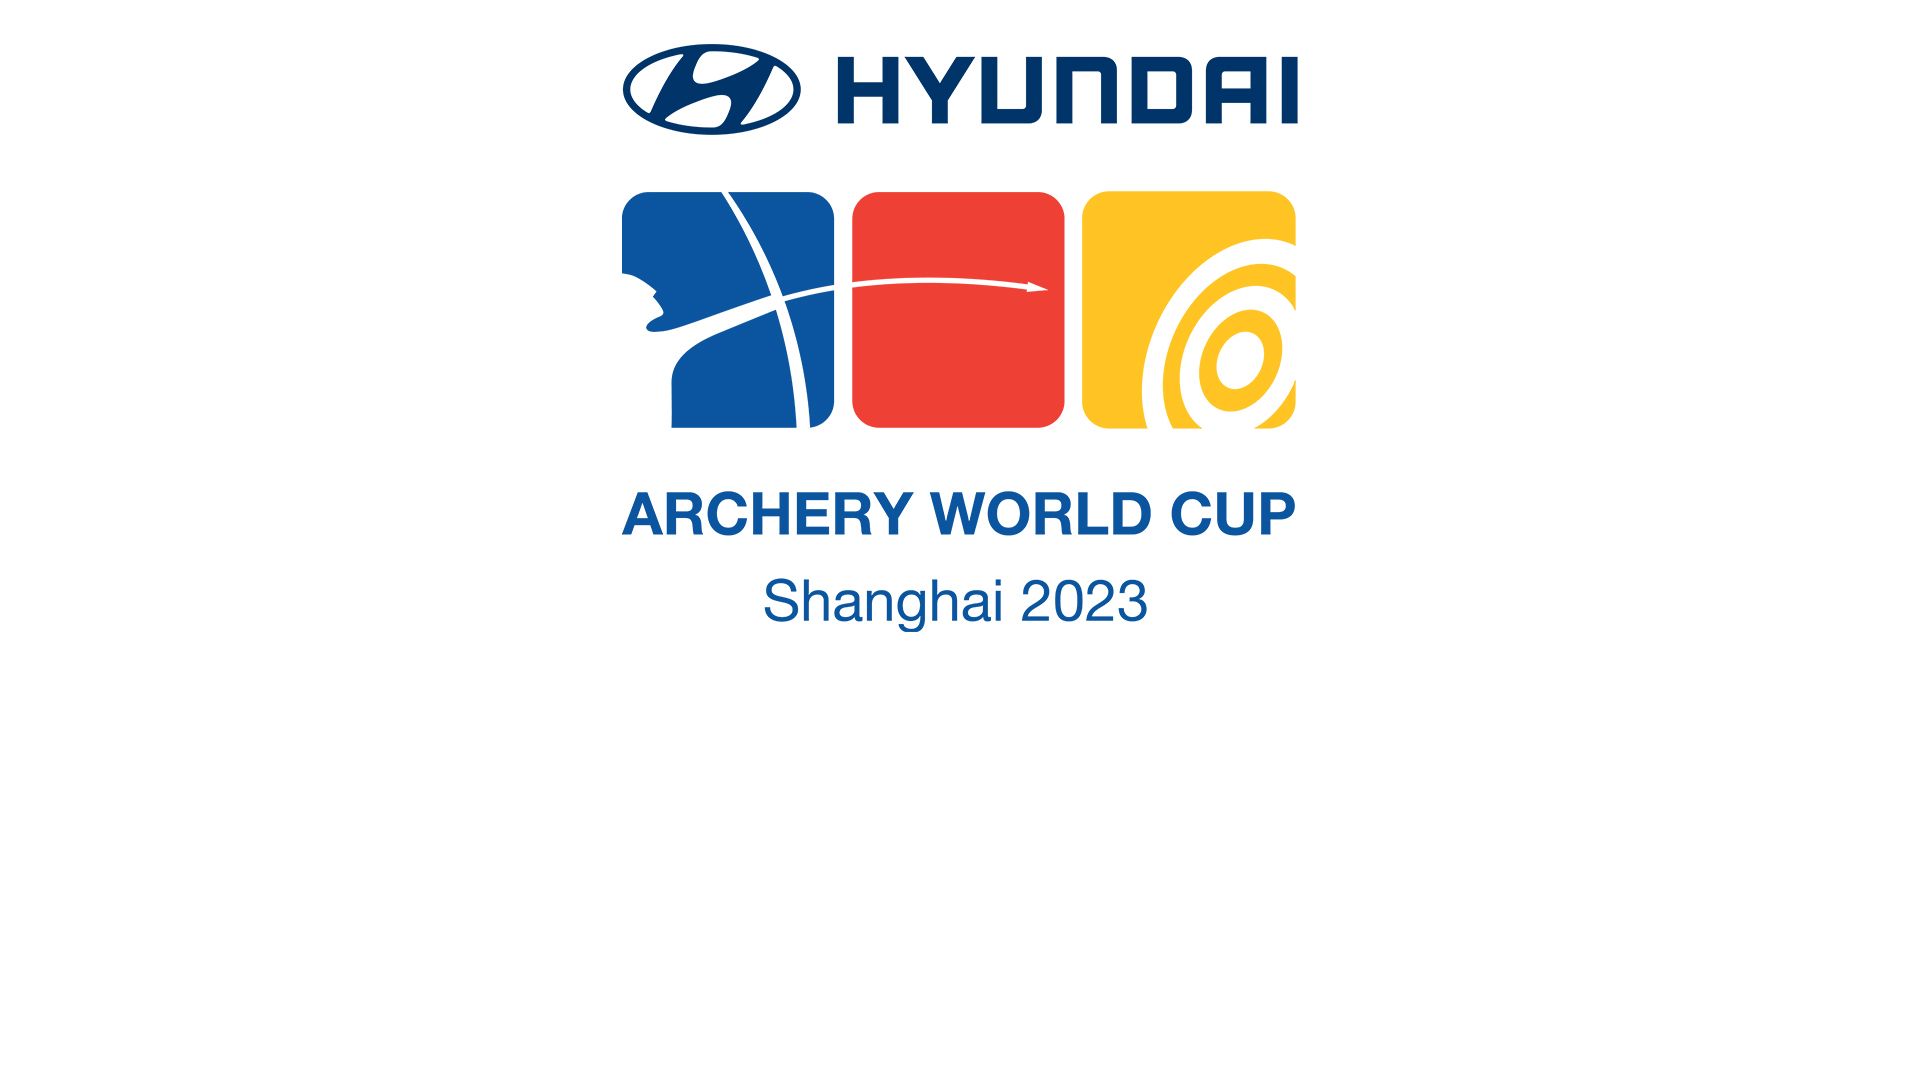 Hyundai Archery World Cup 2023